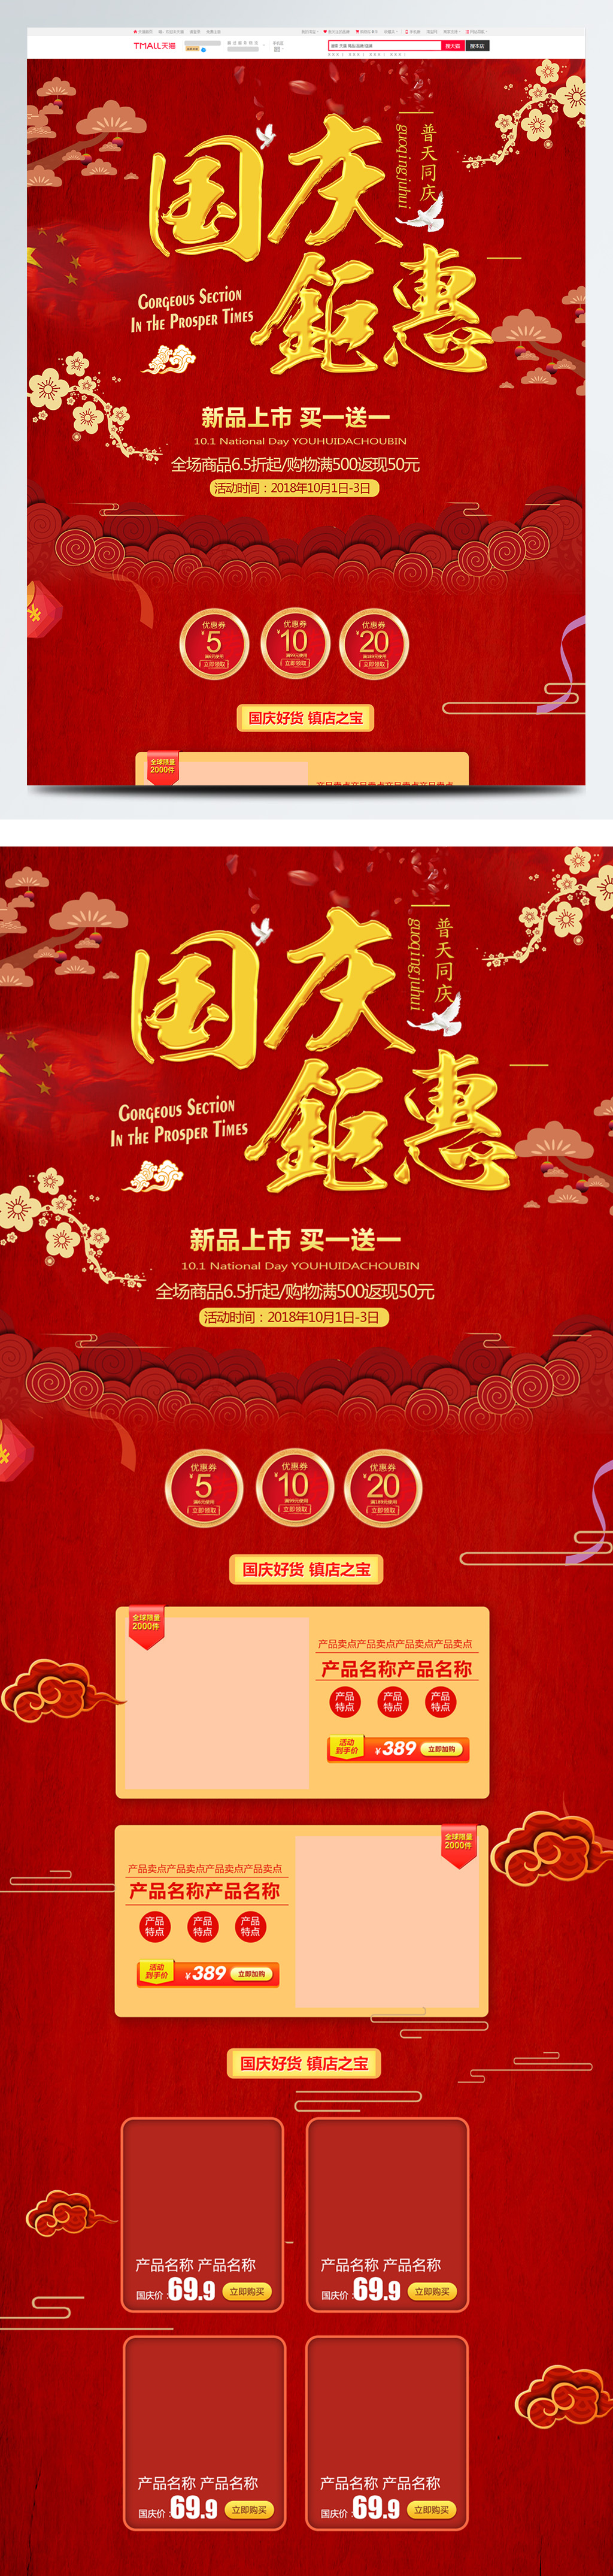 红色中国风电商促销国庆节淘宝首页促销模板图片